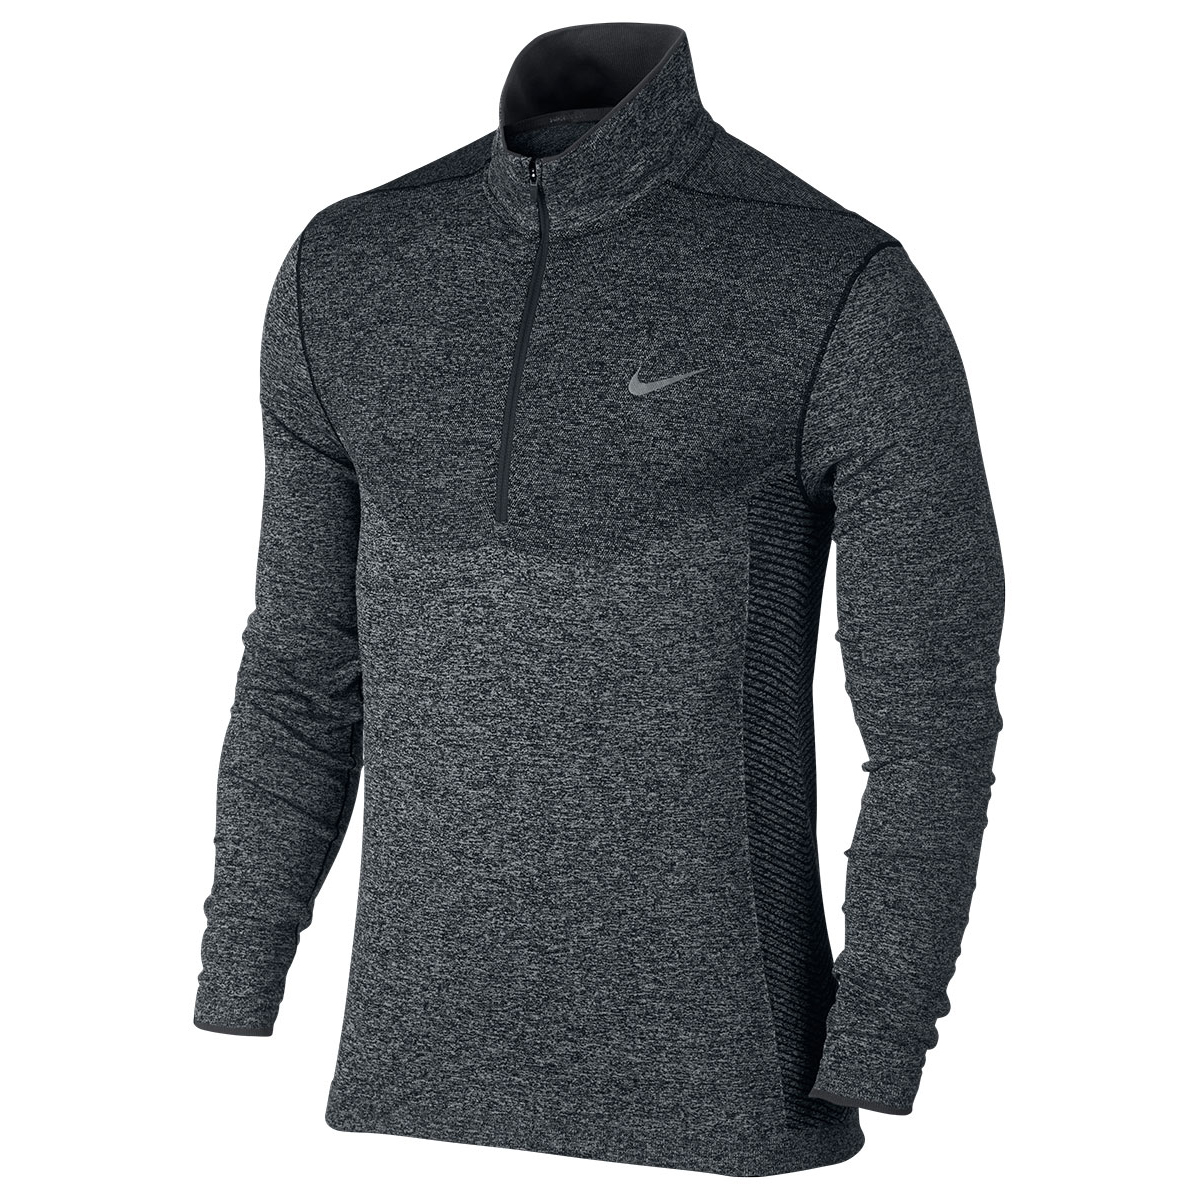 Nike Golf Dri-Fit Knit Zip Sweater | Online Golf